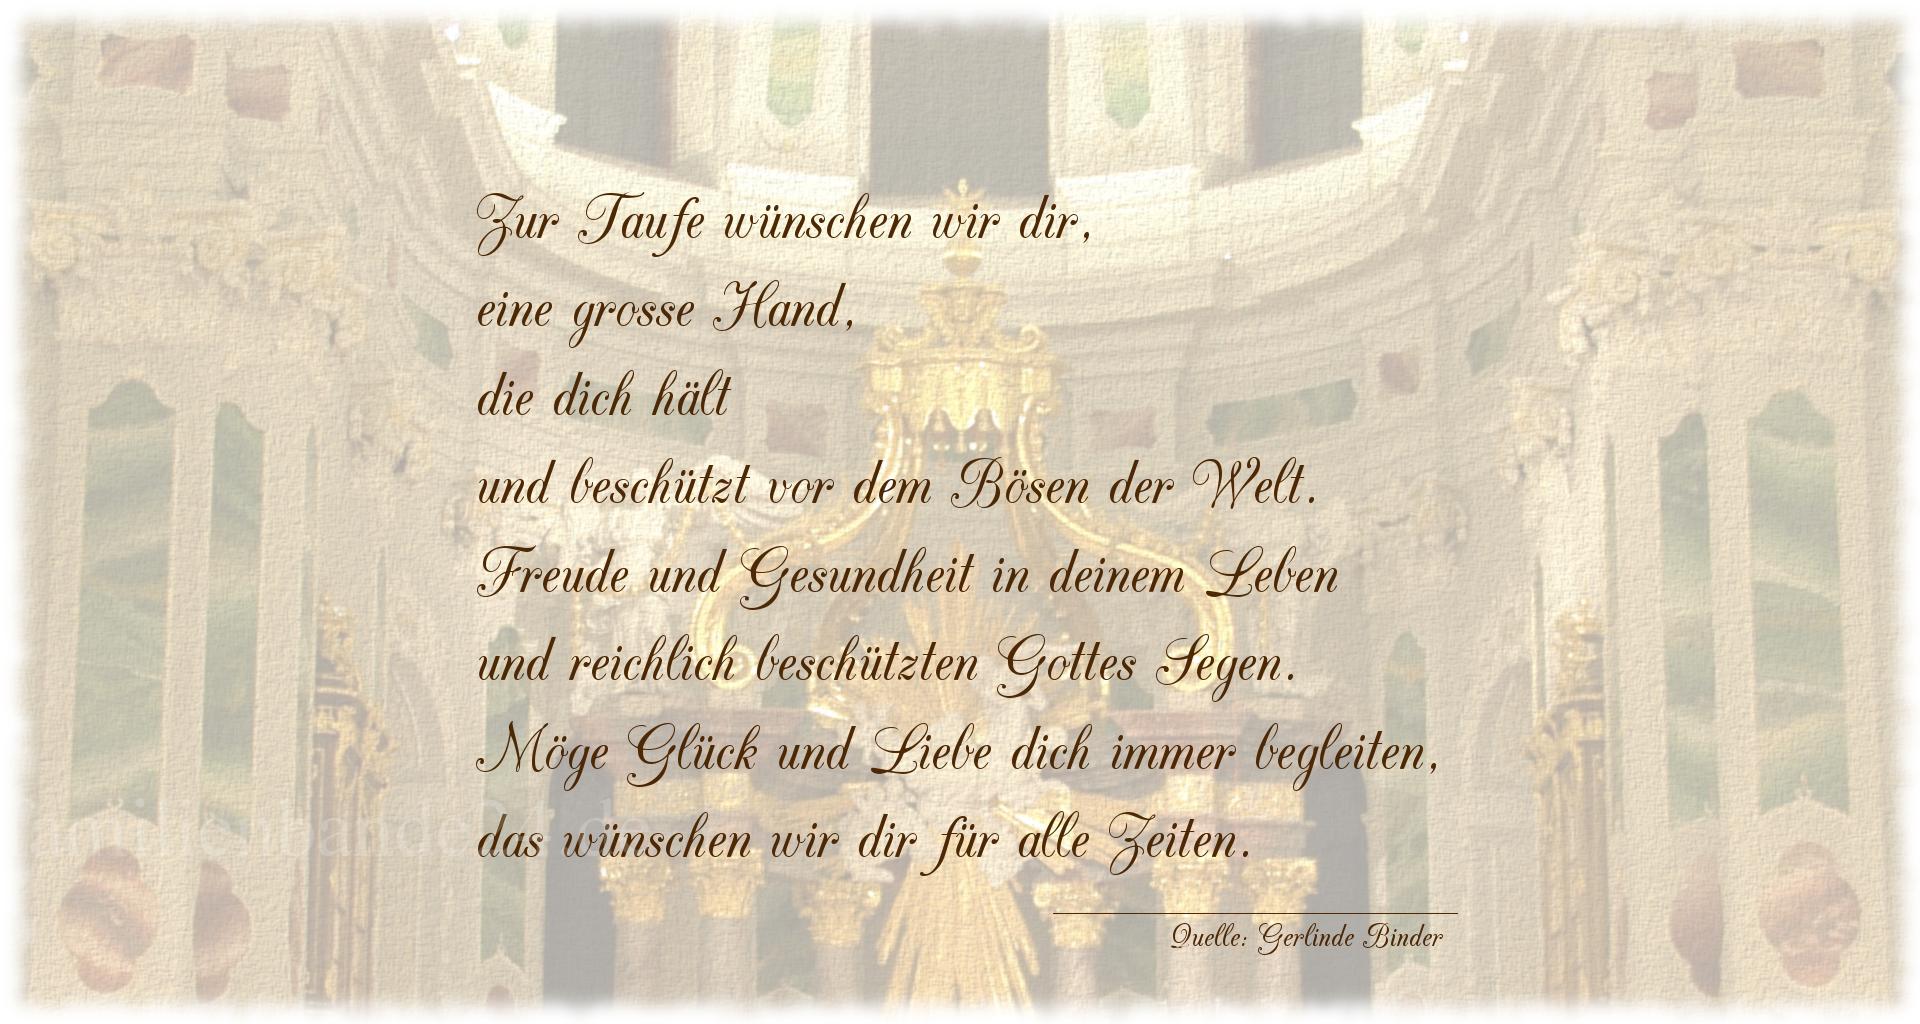 Taufspruch Nummer 1825 (von Gerlinde Binder): Zur Taufe wünschen wir dir,
eine große Hand, die dich h [...]